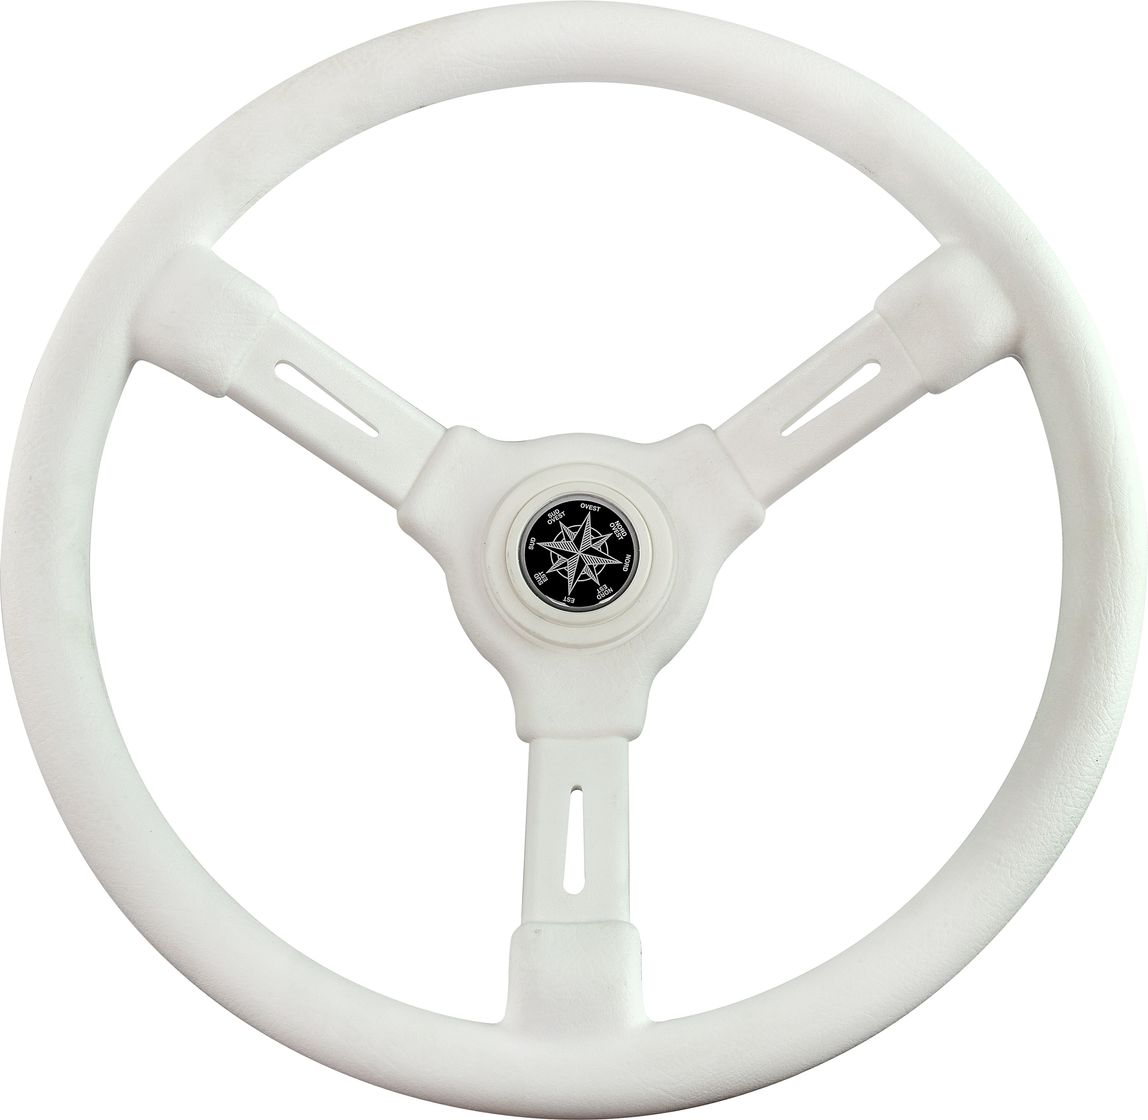 Рулевое колесо RIVIERA белый обод и спицы д. 350 мм VN8001-08 рулевое колесо evolution белый обод с карбоновыми вставками more 10016468